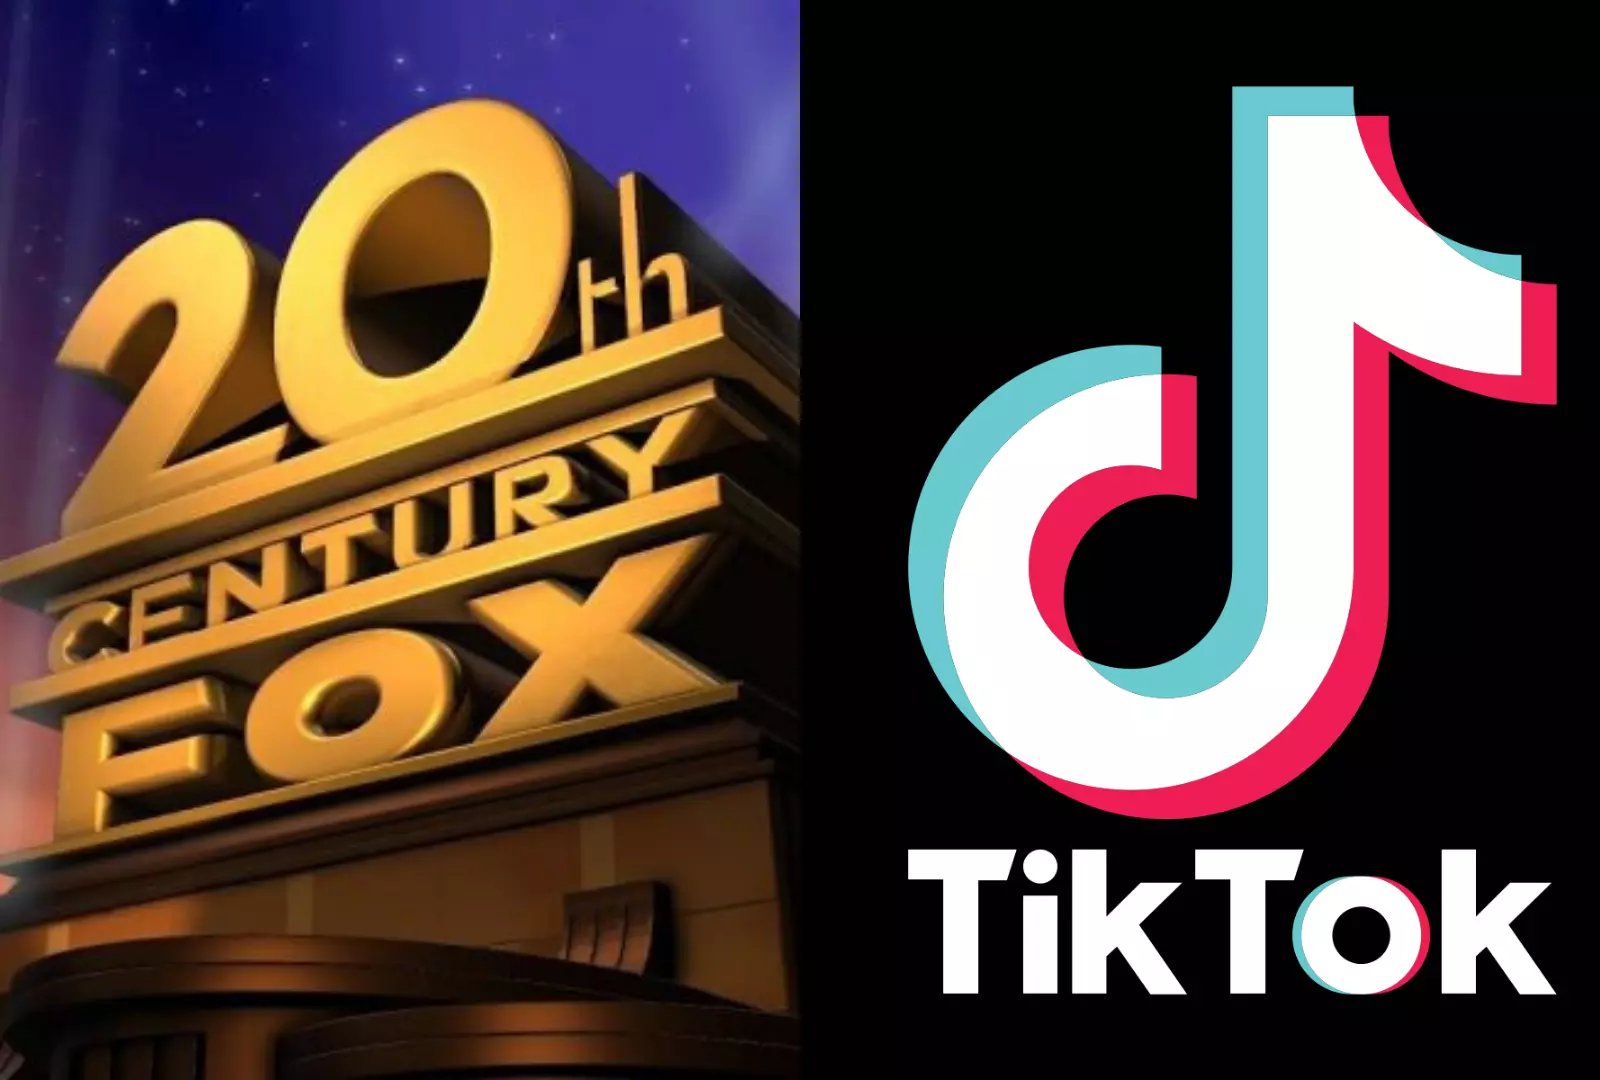 th Century Fox Is No More As Disney Renames Studio